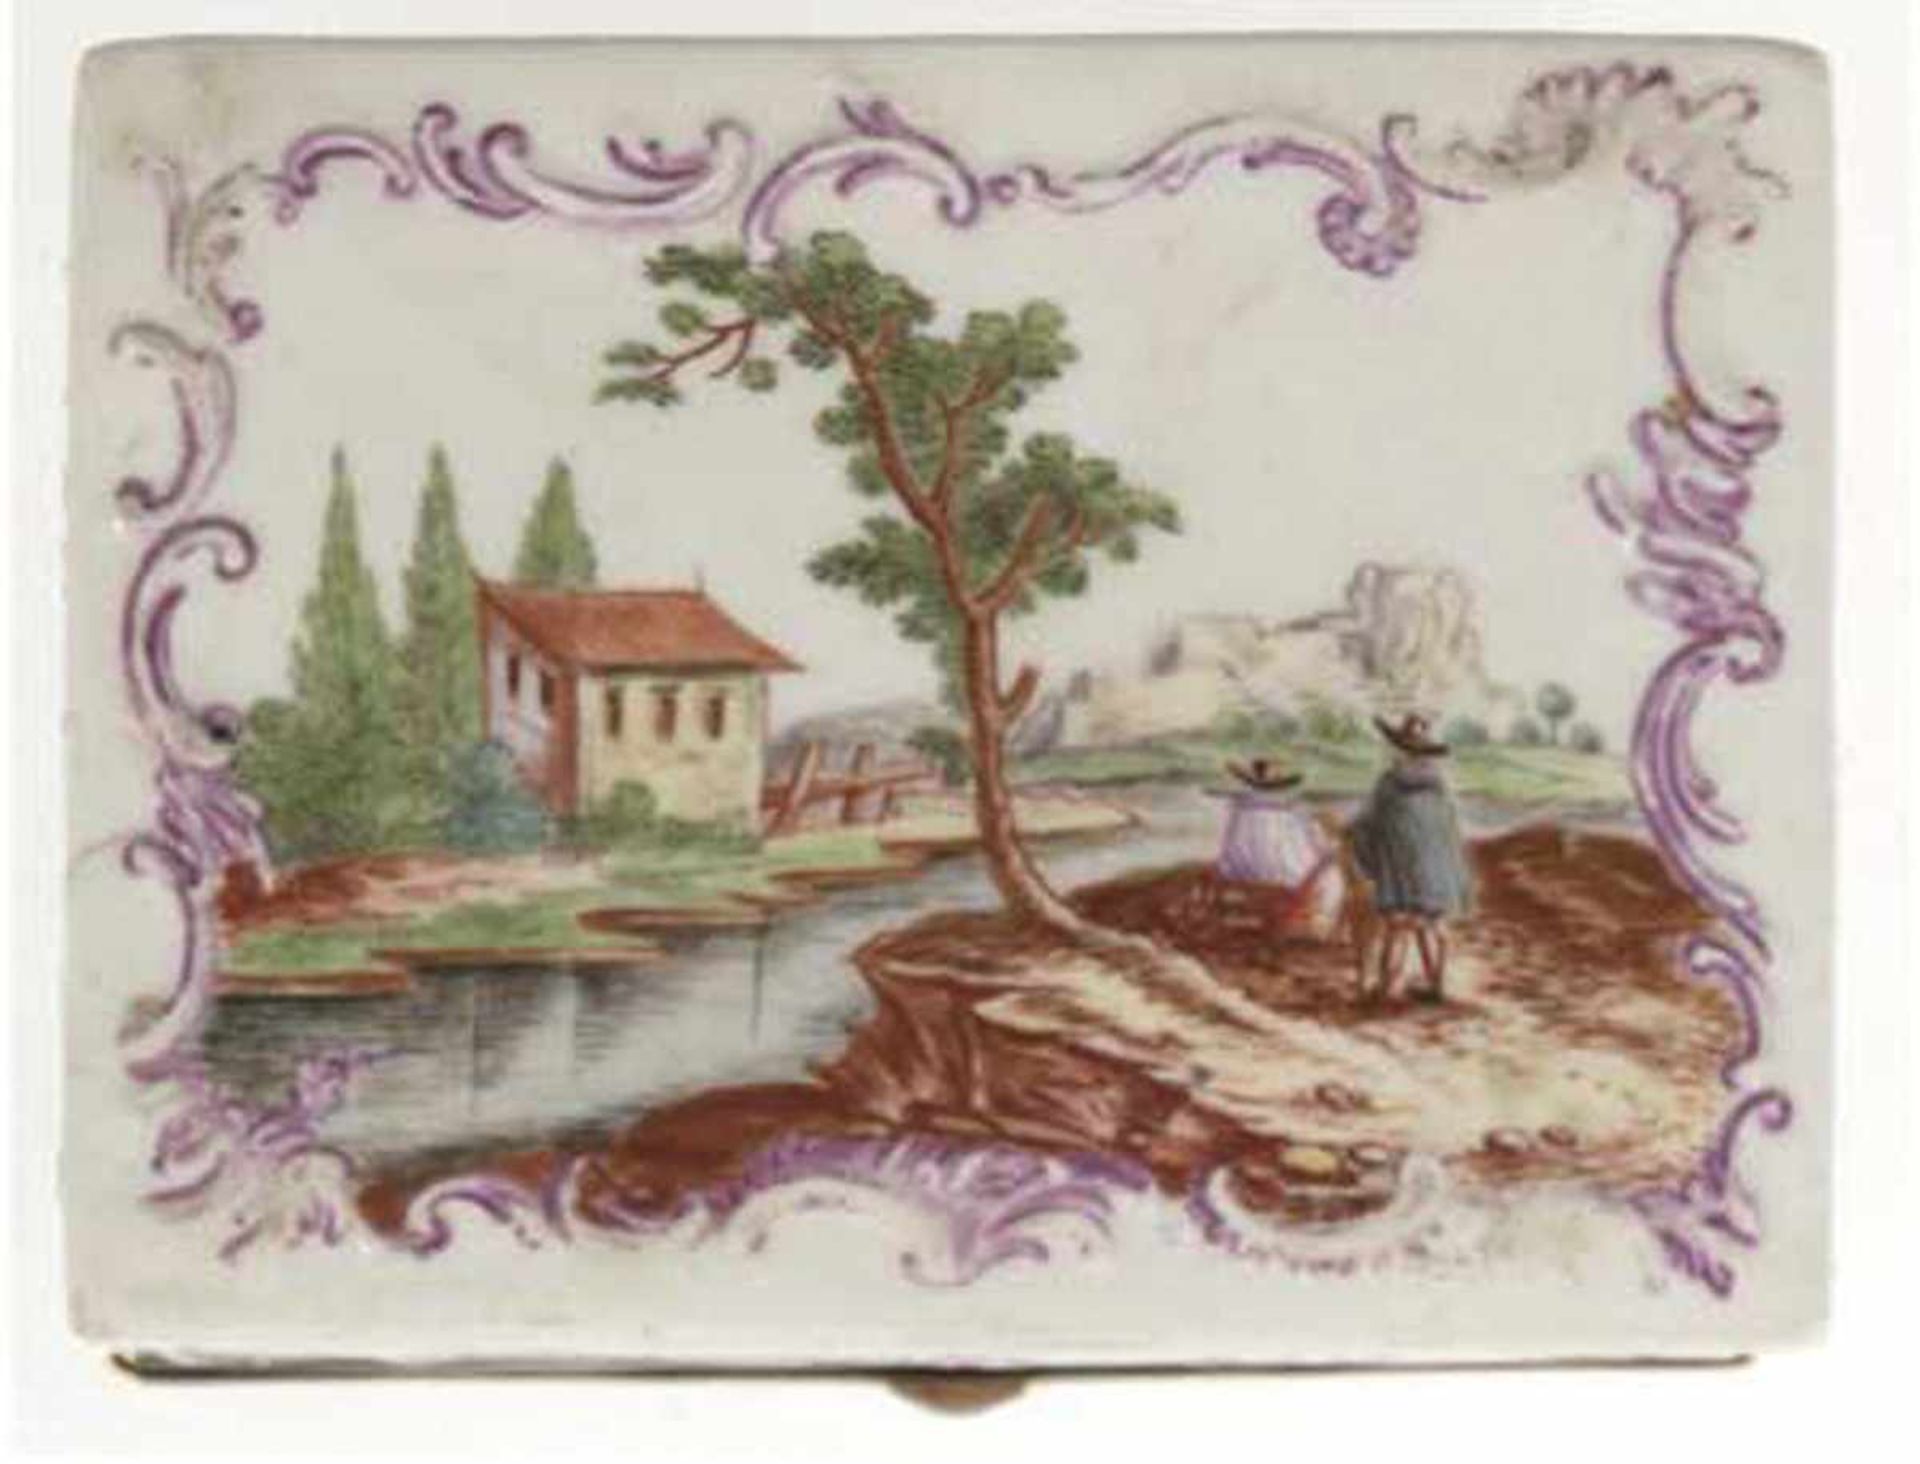 Deckeldose, 18. Jh., Porzellan, polychrome Malerei, umlaufende Landschaftsdarstellung mit - Image 4 of 5